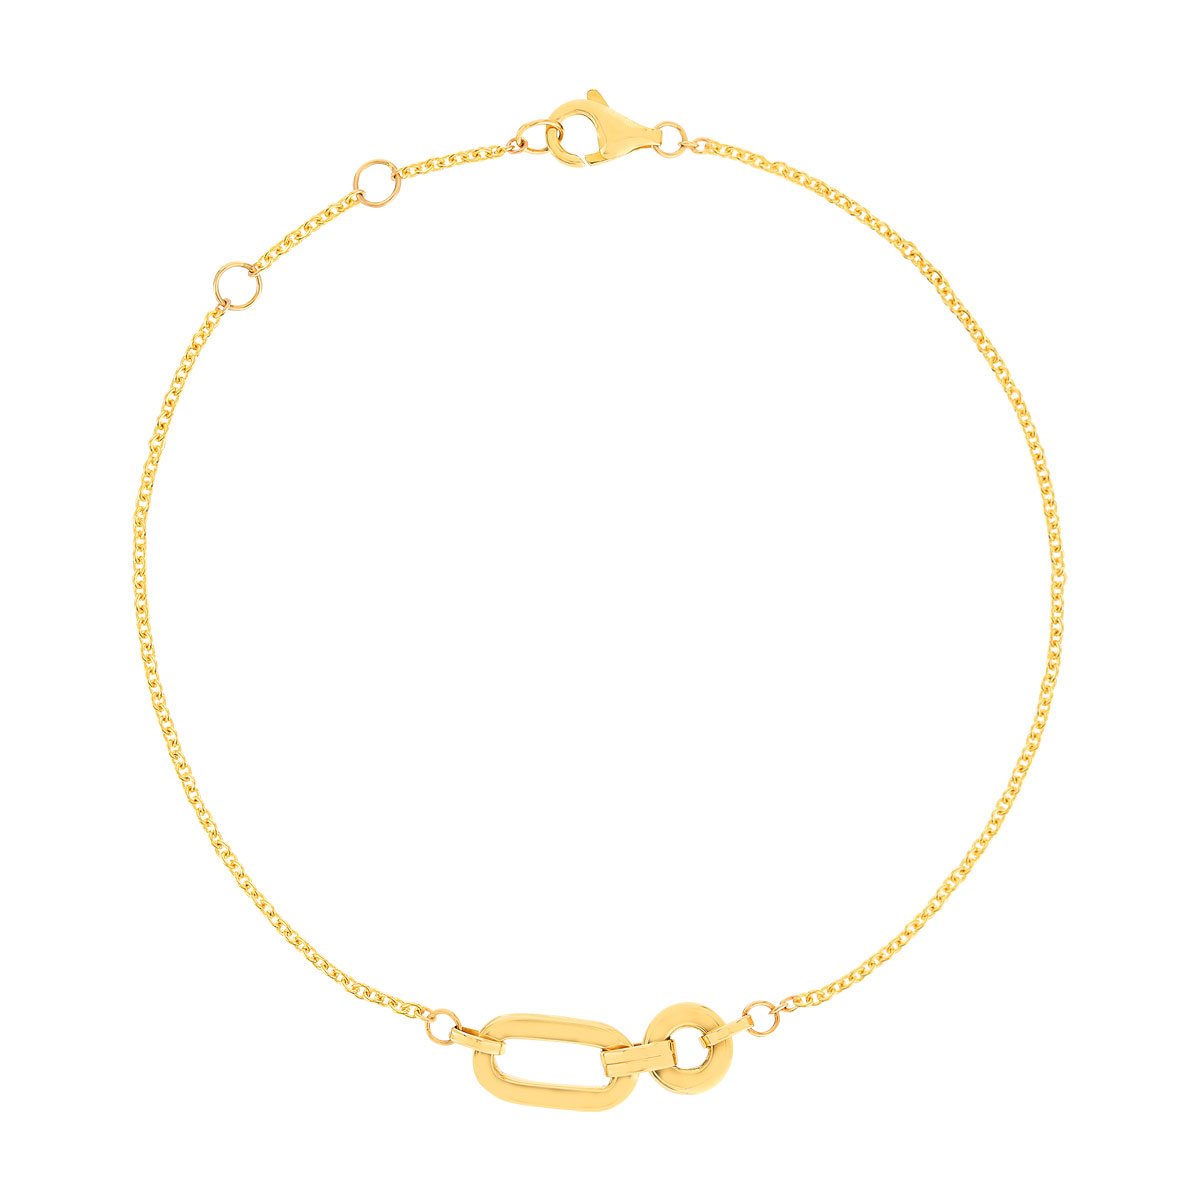 Bracelet or jaune 375, motif maillons. Longueur 19 cm.